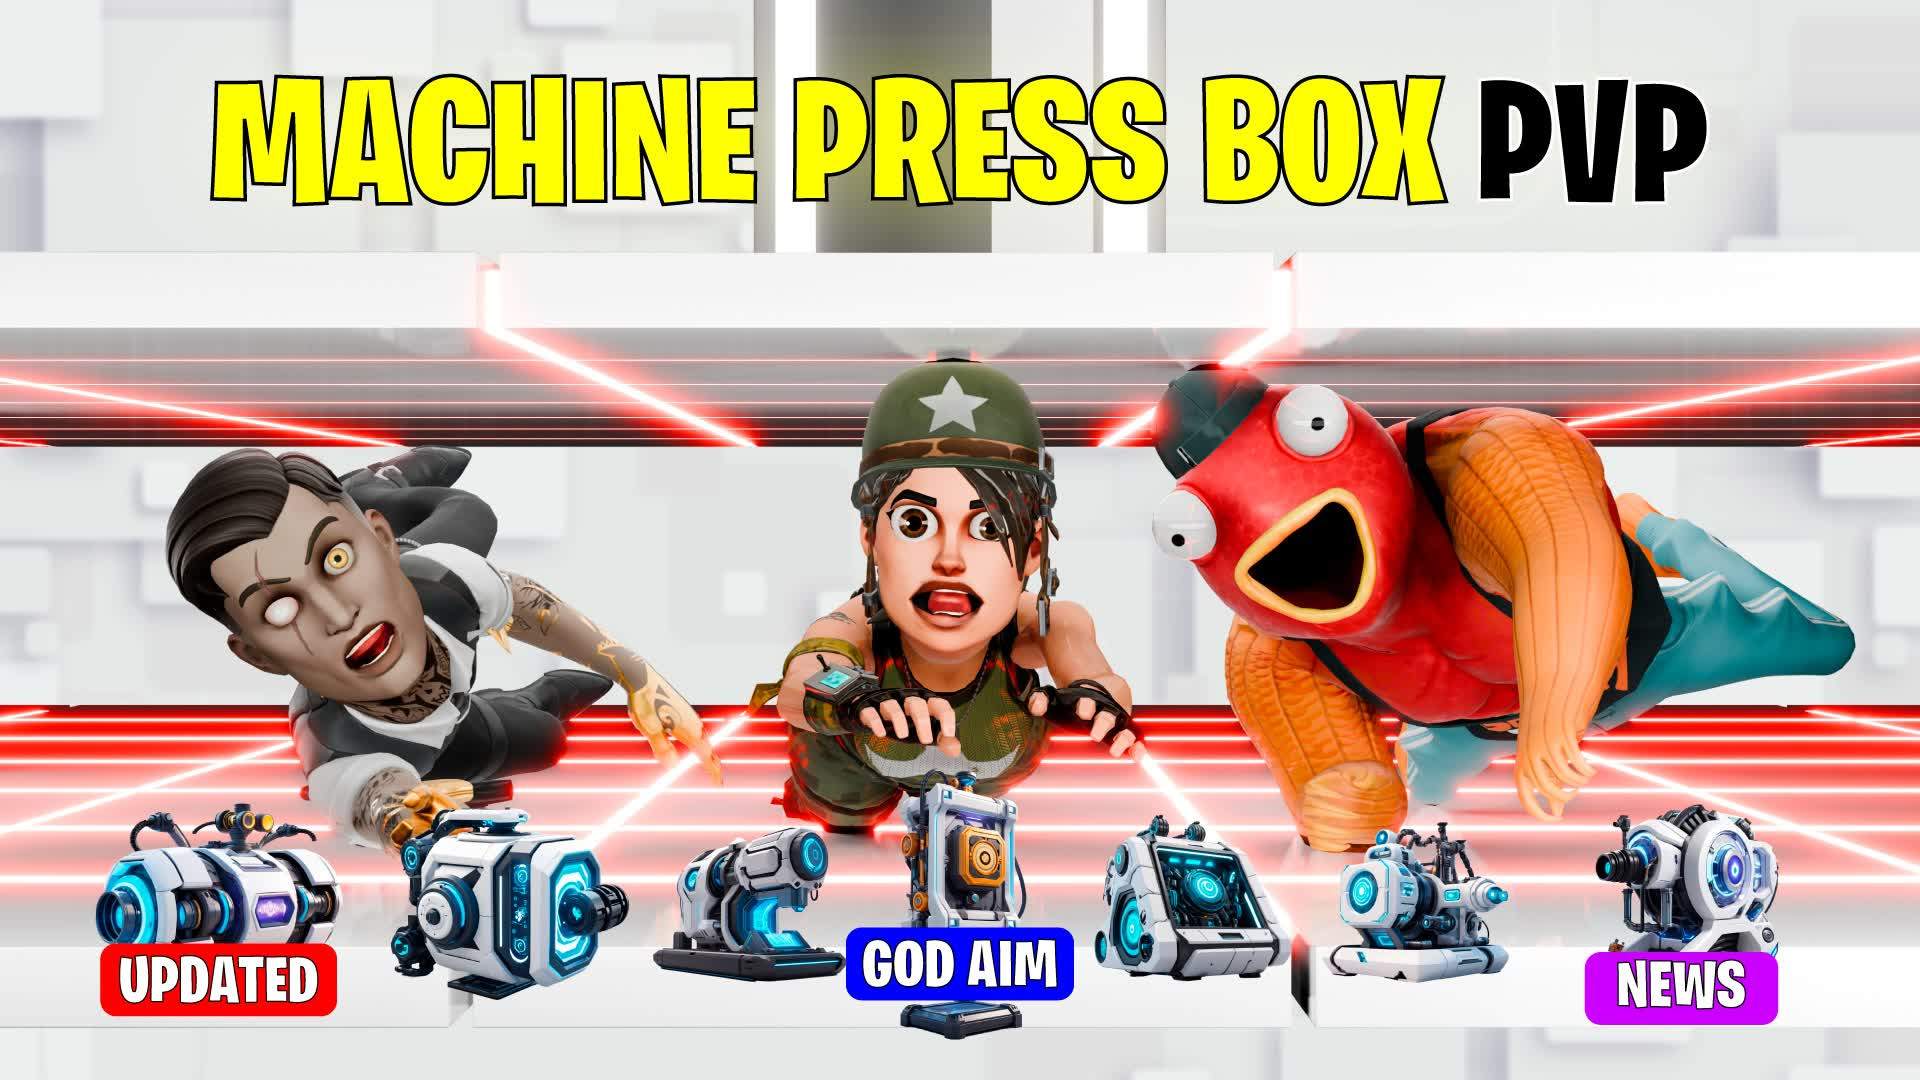 MACHINE PRESS BOX PVP